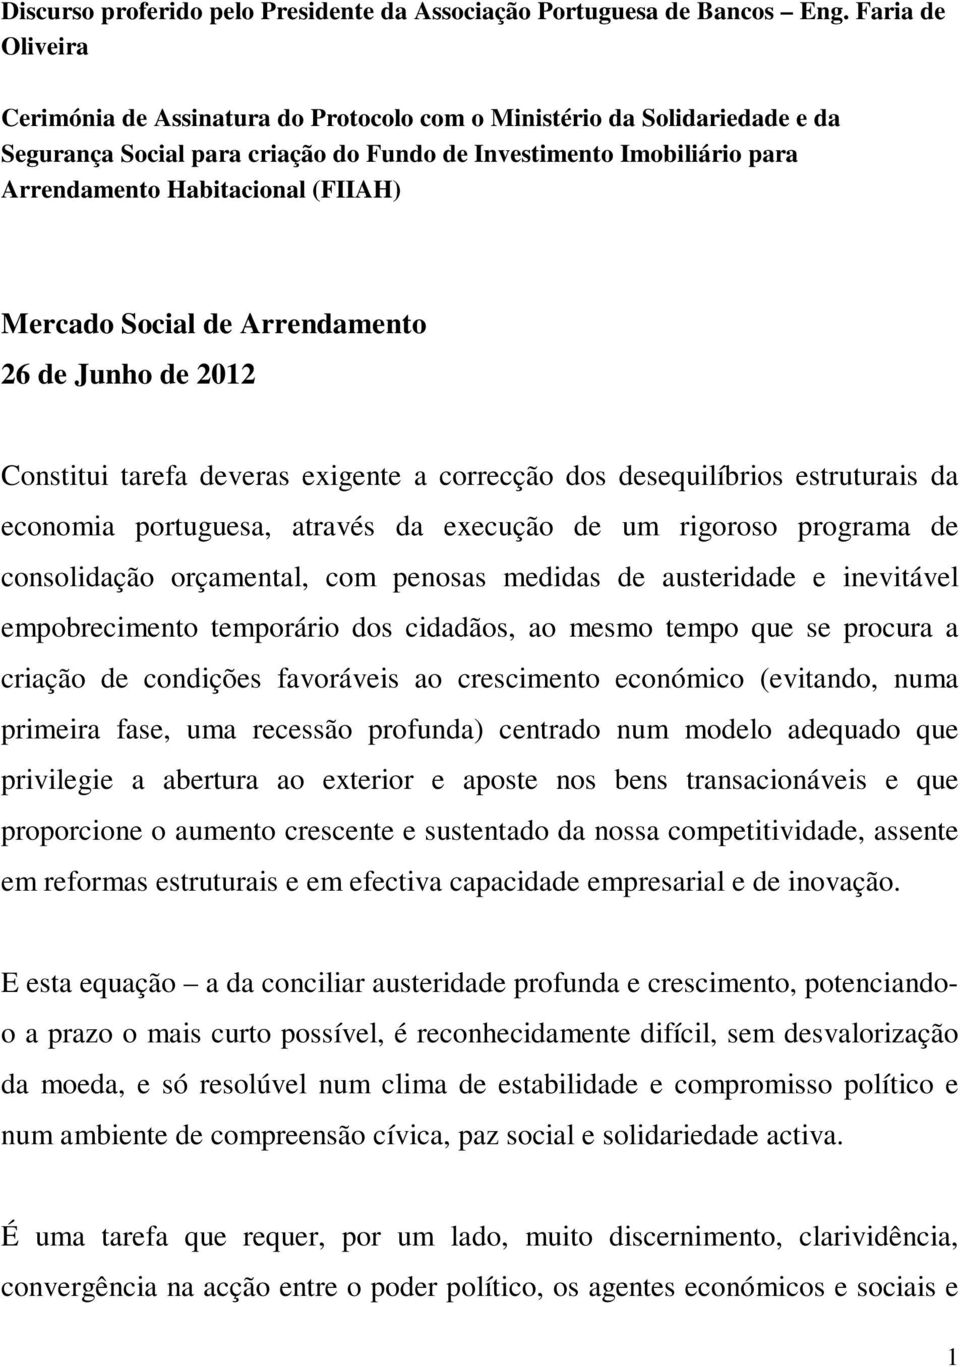 Mercado Social de Arrendamento 26 de Junho de 2012 Constitui tarefa deveras exigente a correcção dos desequilíbrios estruturais da economia portuguesa, através da execução de um rigoroso programa de